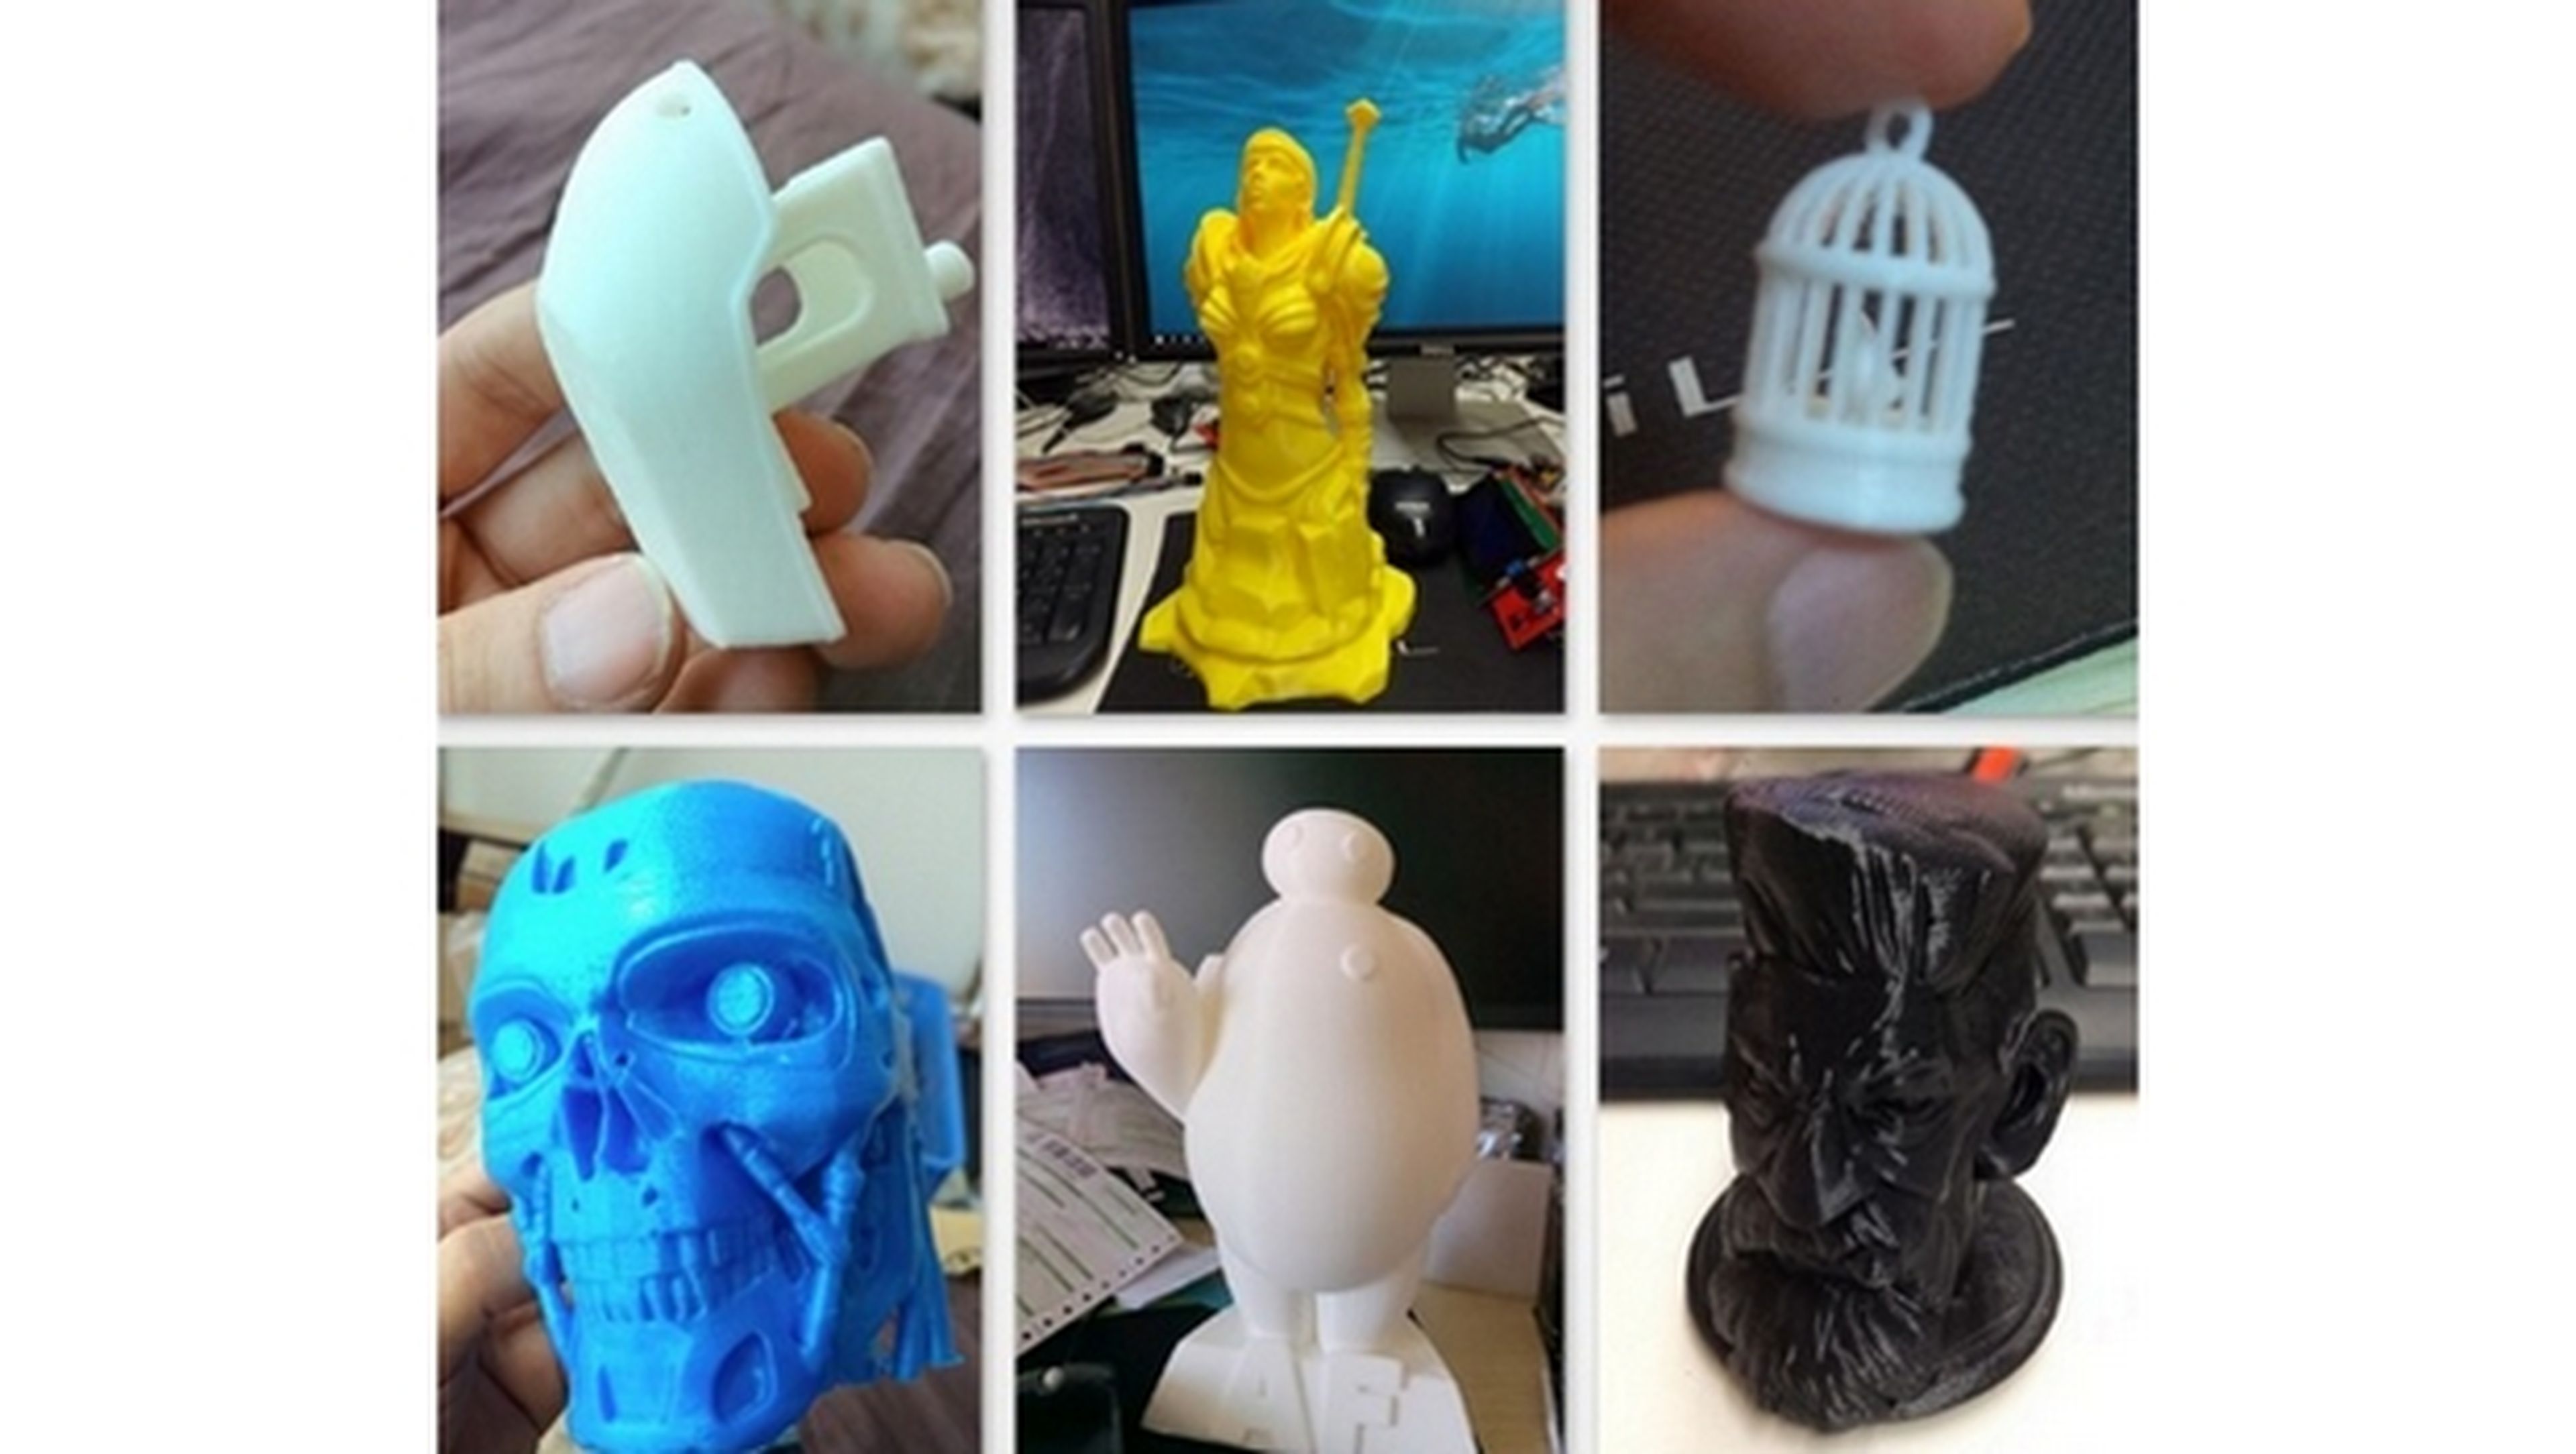 Las mejores impresoras 3D baratas